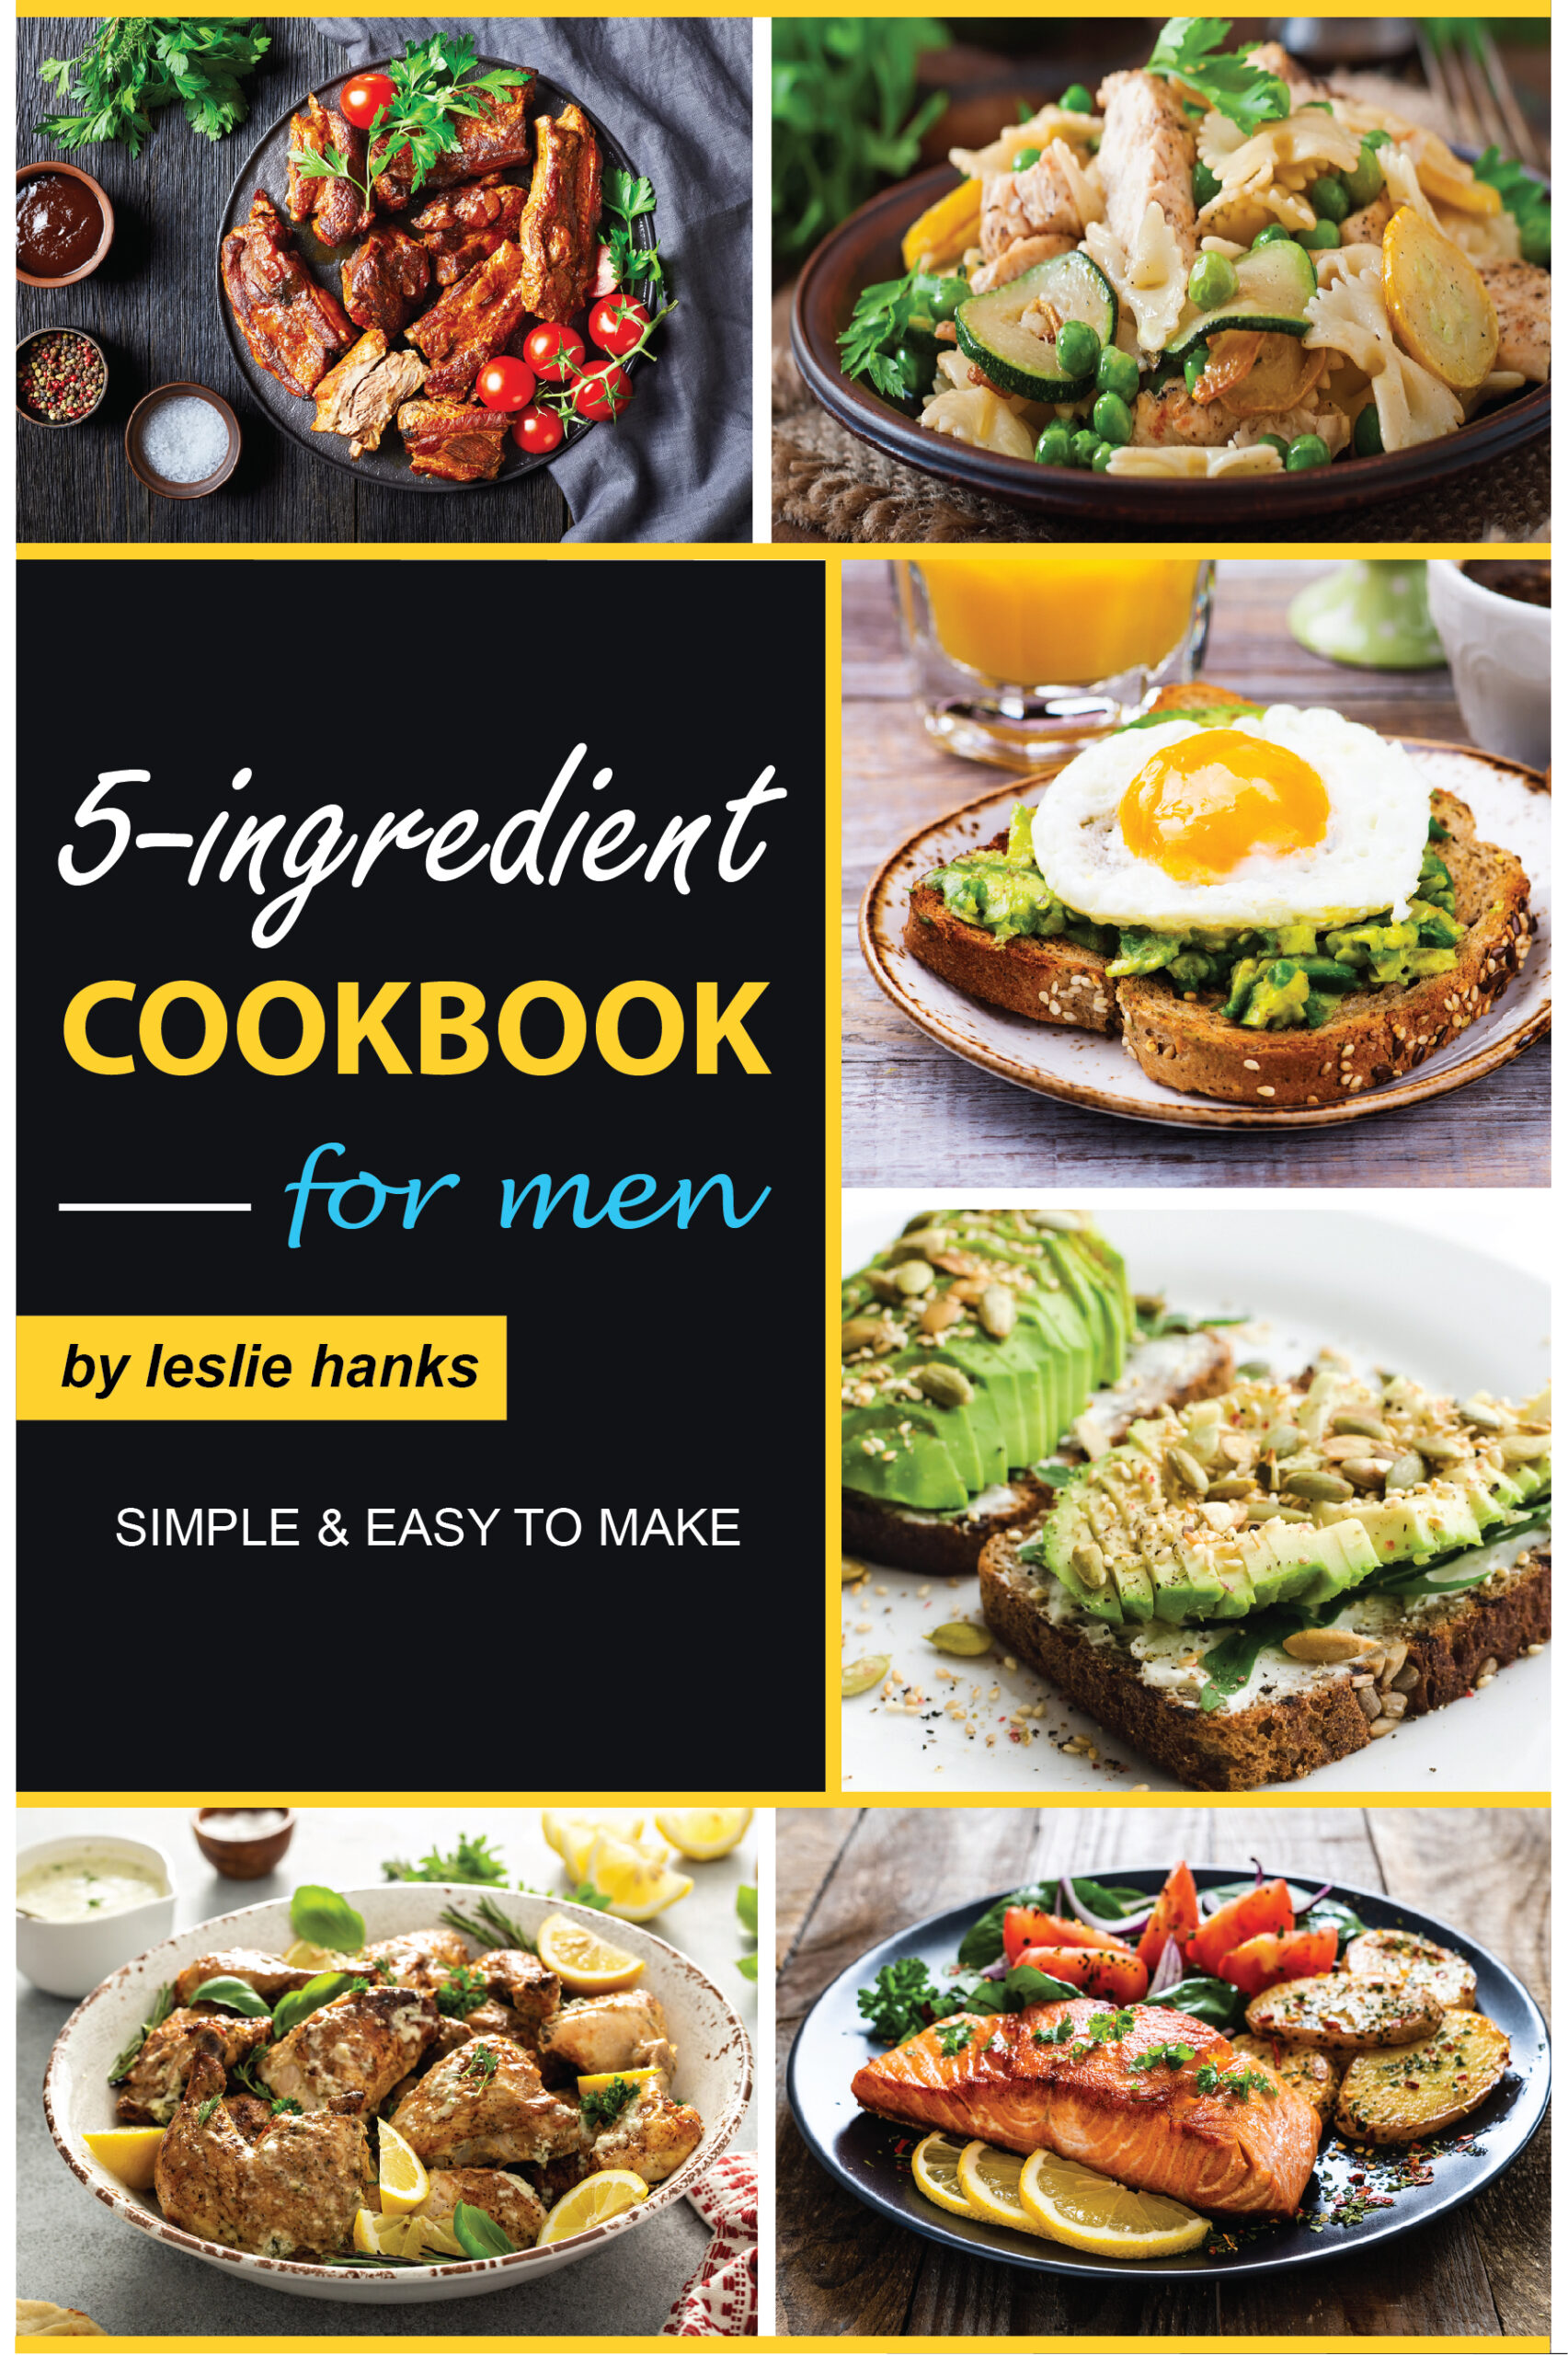 FREE: 5-Ingredient Cookbook for Men by Leslie Hanks